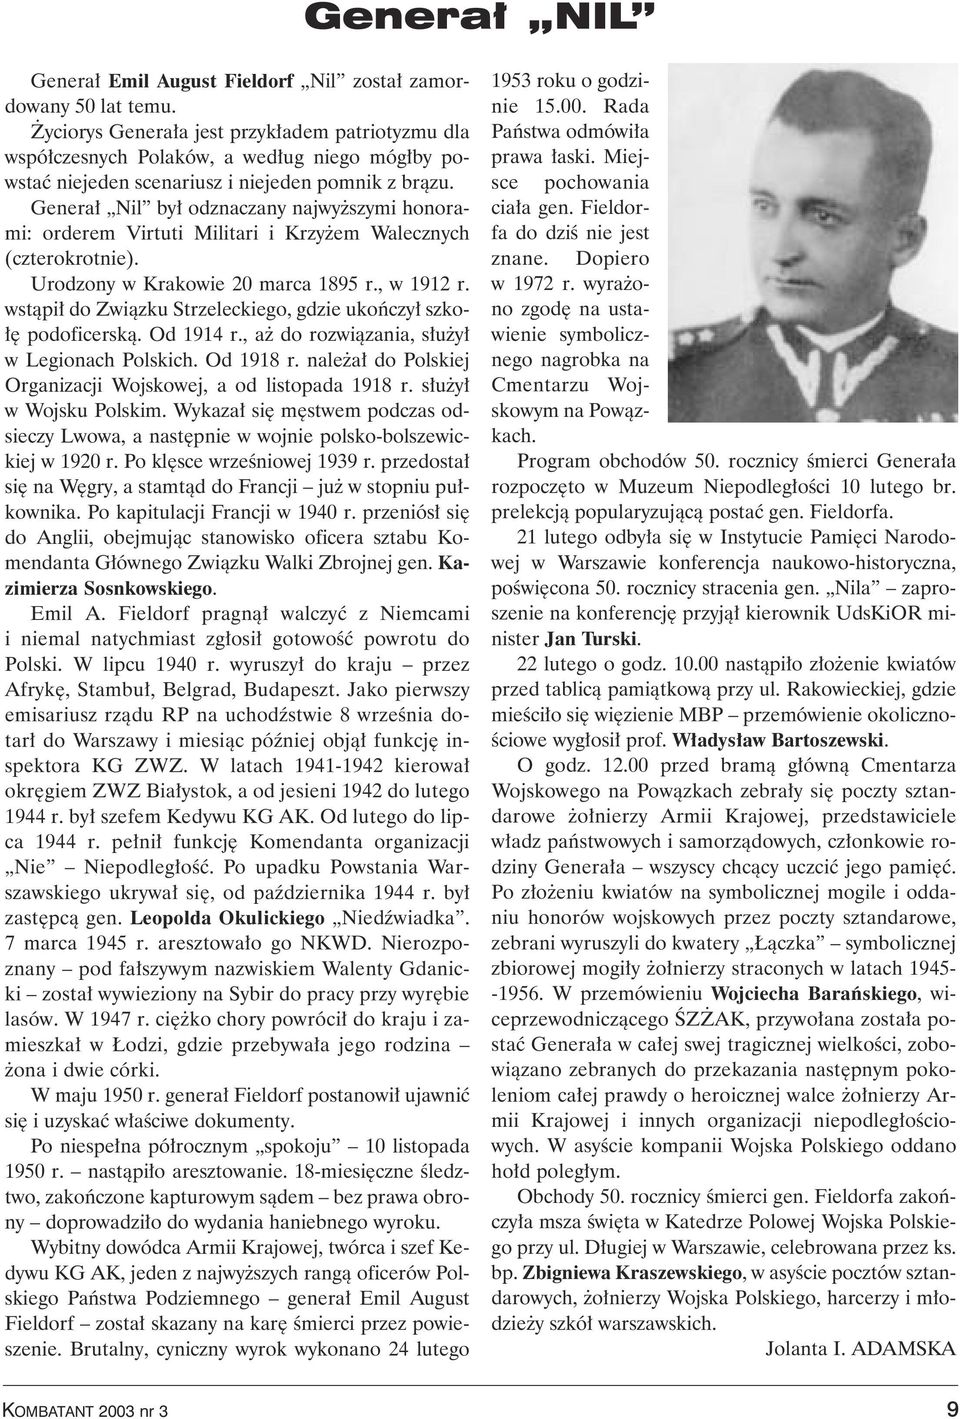 Genera Nil by odznaczany najwy szymi honorami: orderem Virtuti Militari i Krzy em Walecznych (czterokrotnie). Urodzony w Krakowie 20 marca 1895 r., w 1912 r.